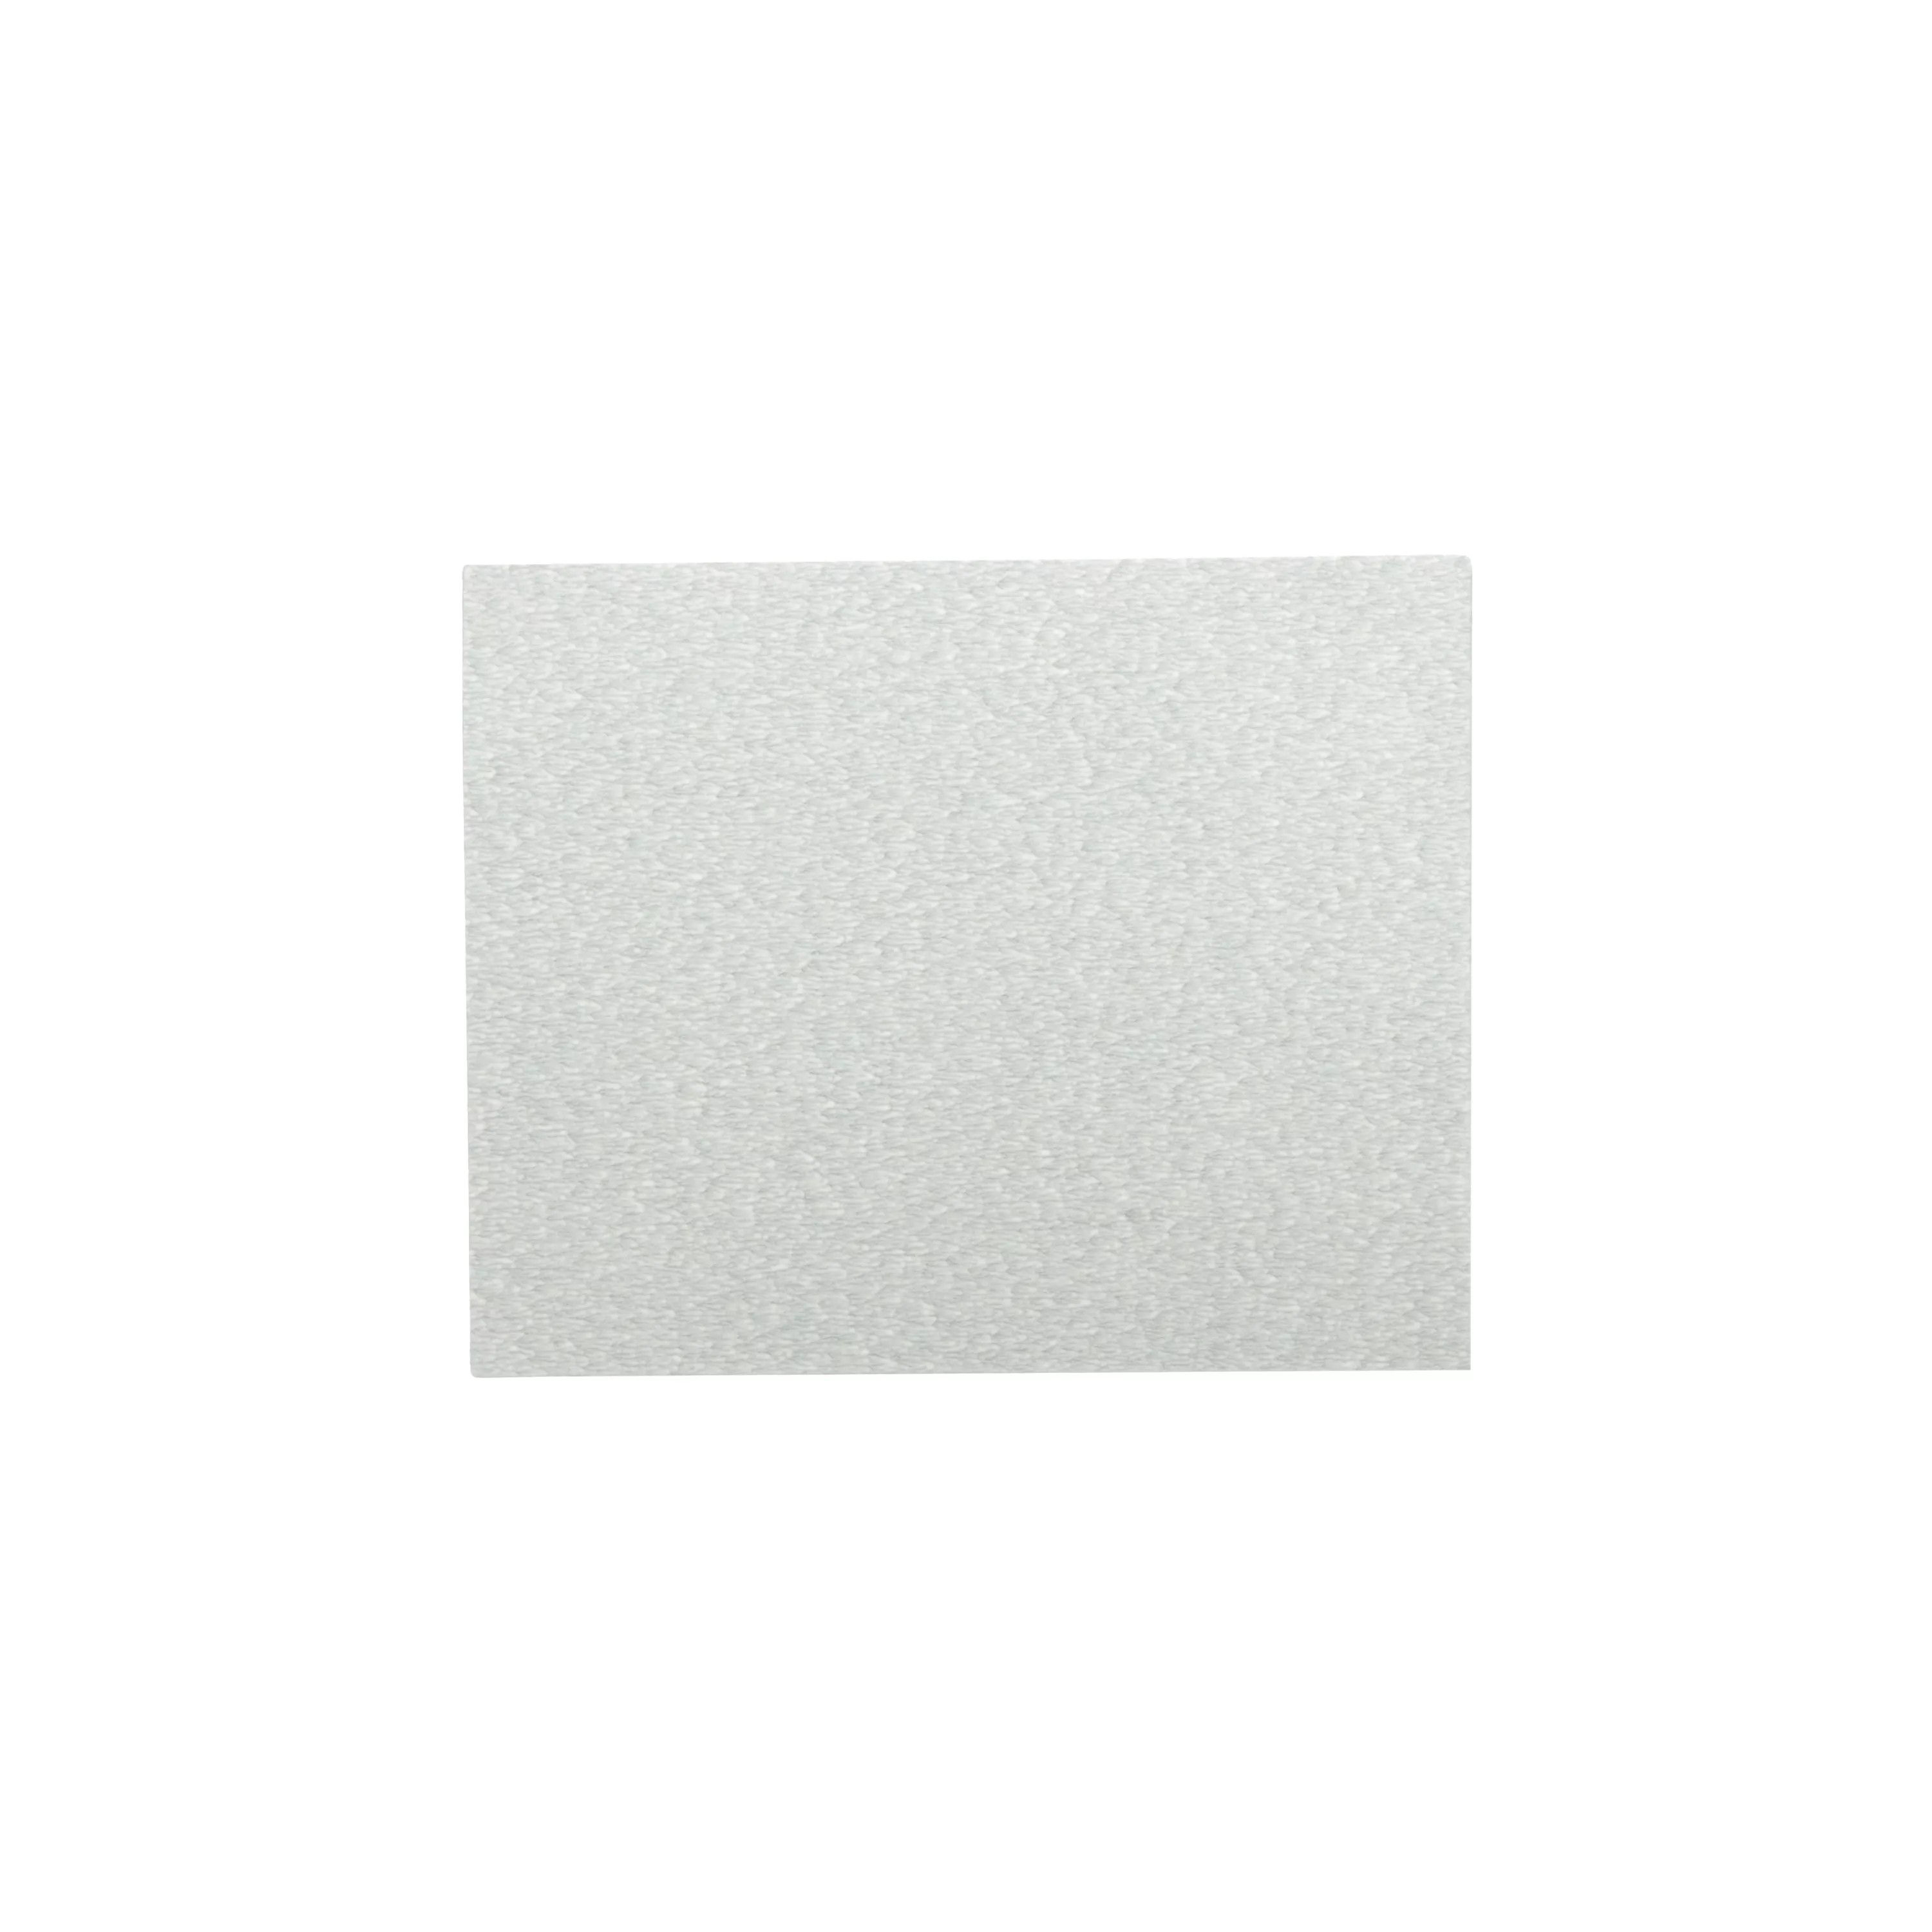 3M™ Paper Sheet 405U, 280 A-weight, 9 in x 11 in, 100/Carton, 1000
ea/Case